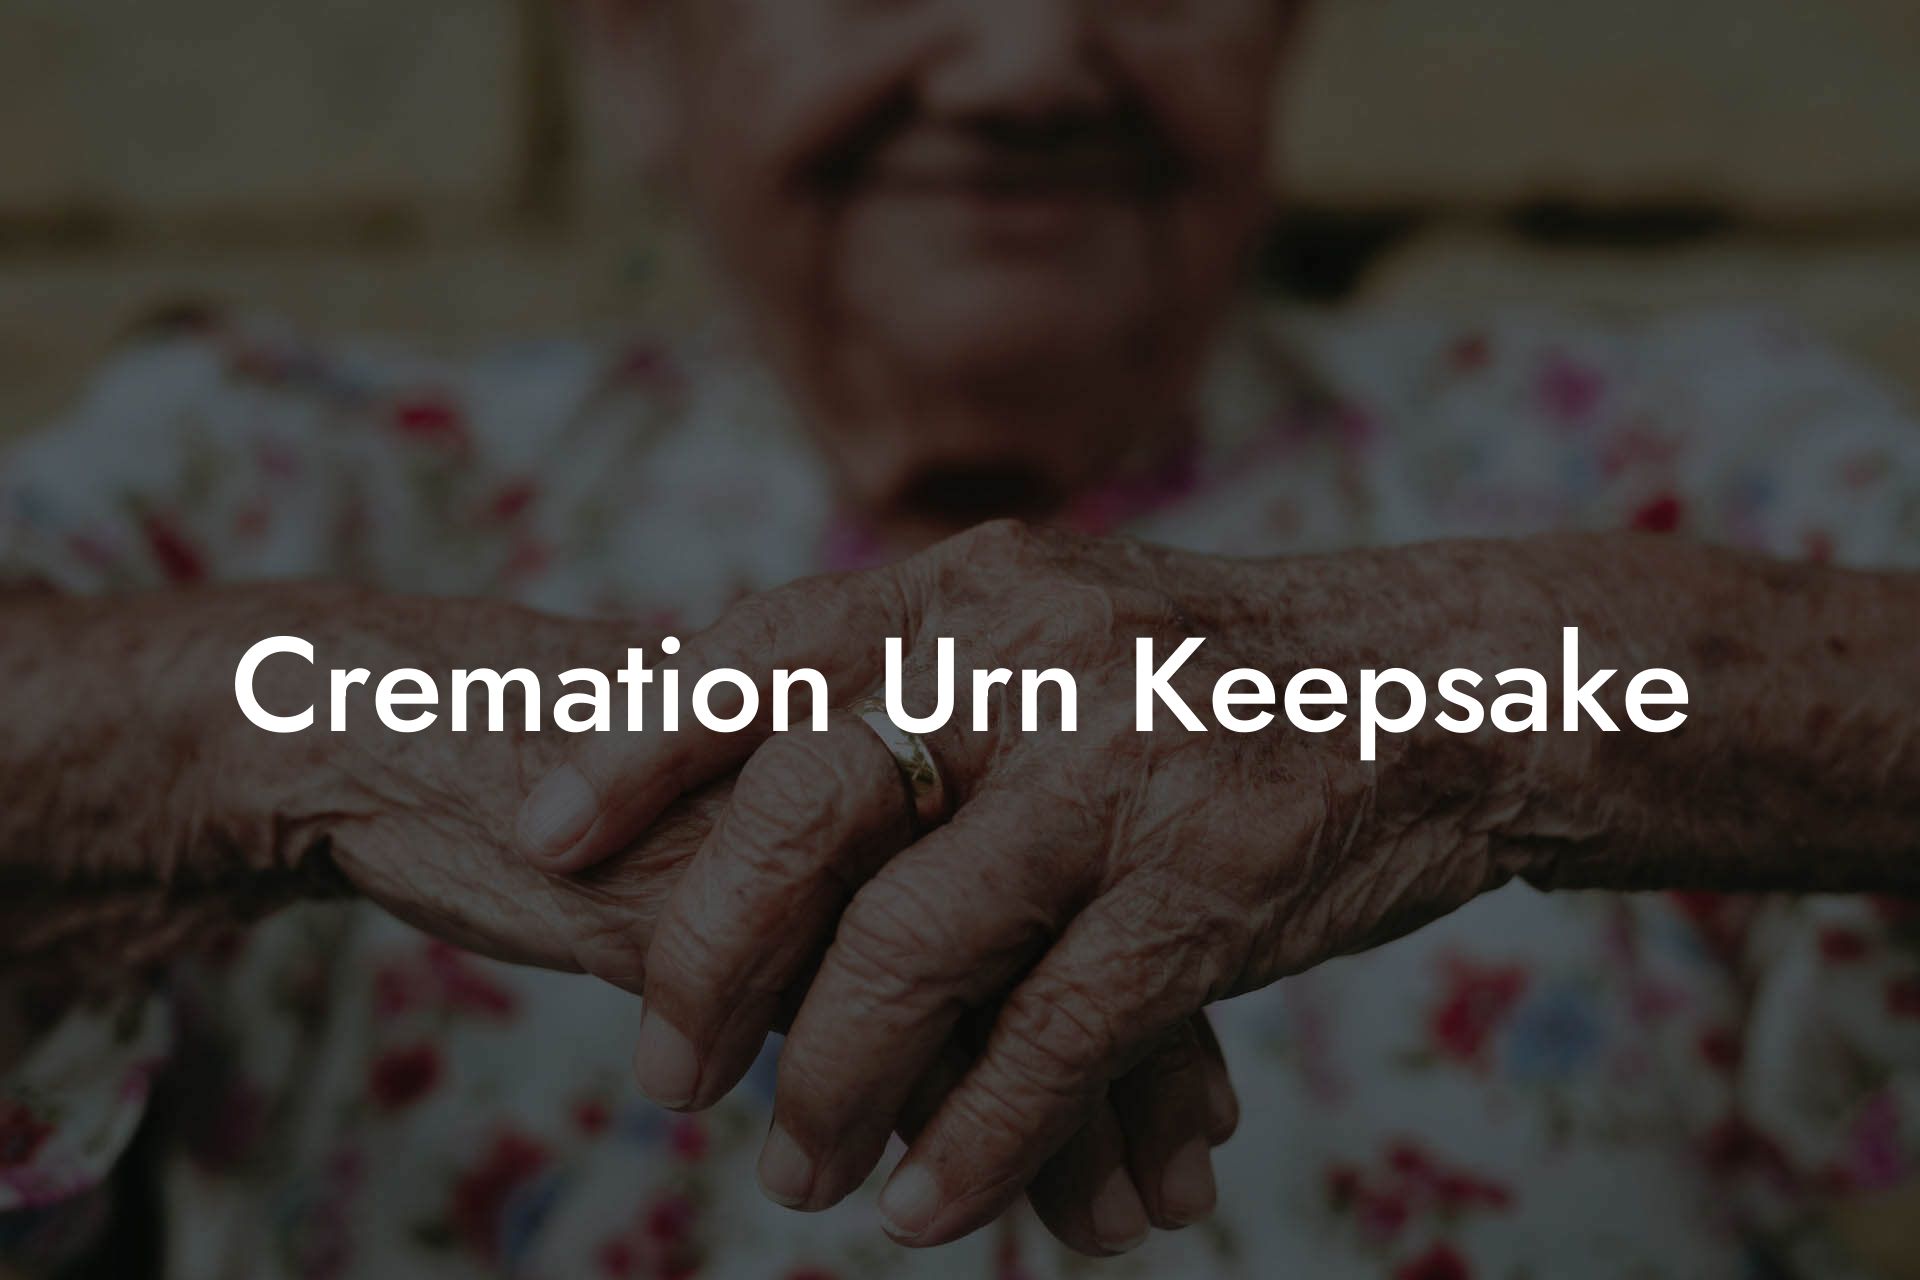 Cremation Urn Keepsake